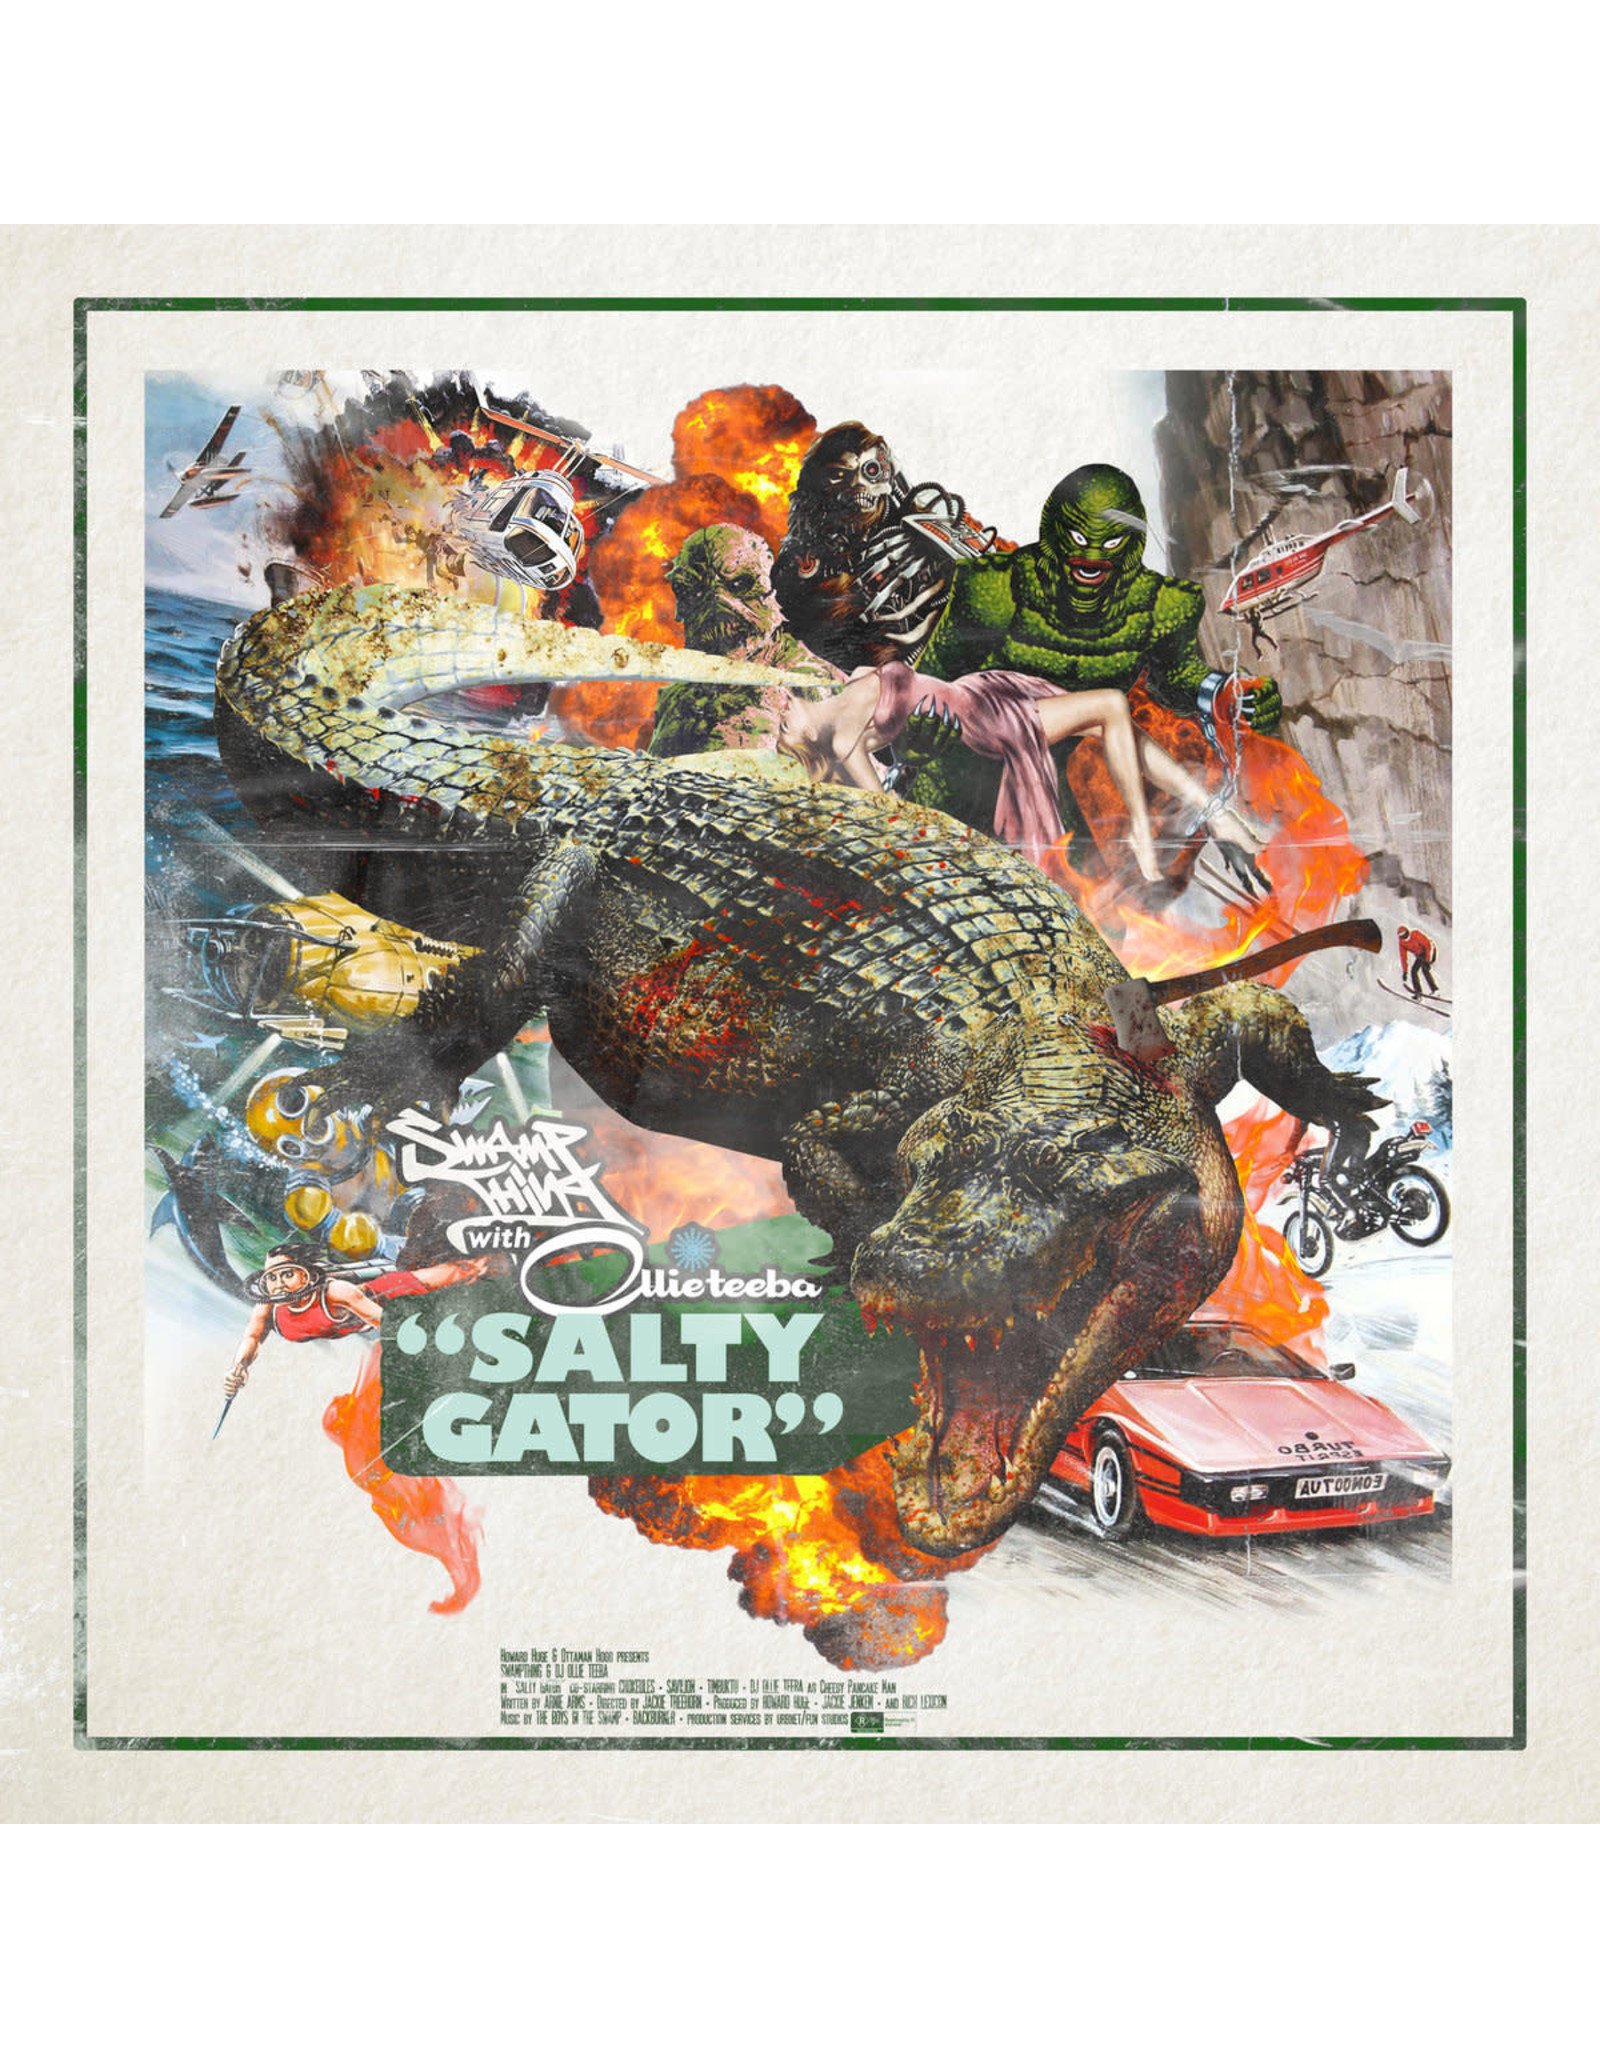 New Vinyl Swamp Thing With Ollie Teeba - Salty Gator LP